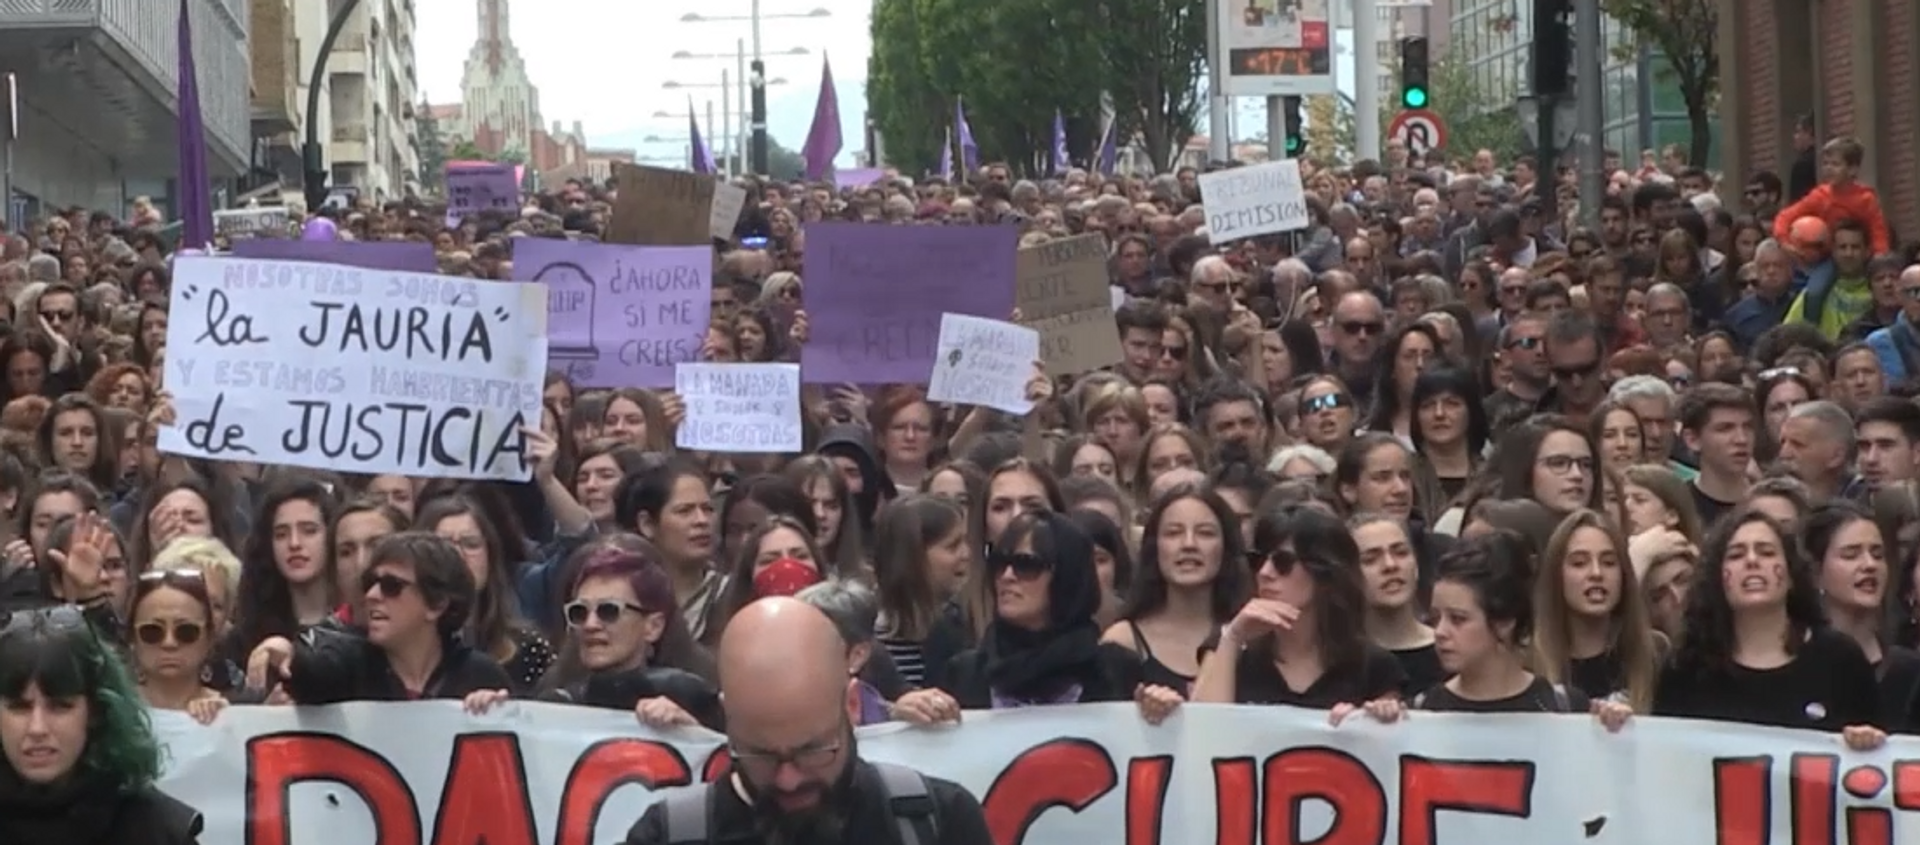 No es abuso, es violación: Pamplona protesta contra el fallo de 'la Manada' - Sputnik Mundo, 1920, 12.11.2020